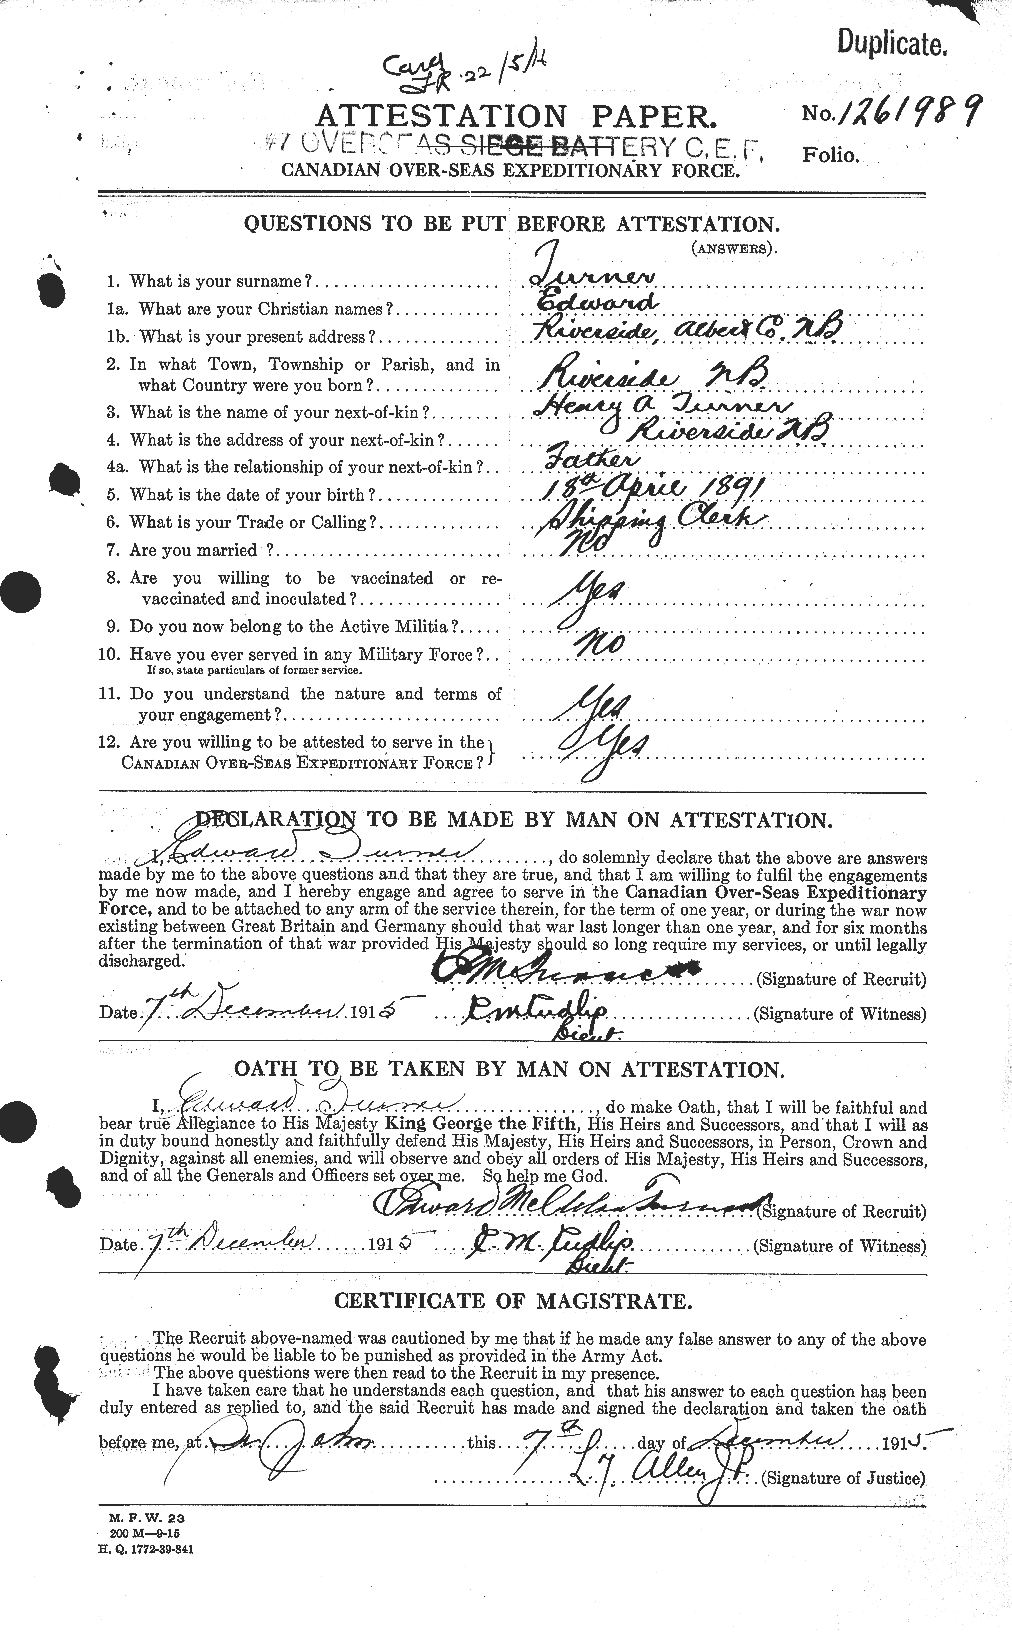 Dossiers du Personnel de la Première Guerre mondiale - CEC 648381a